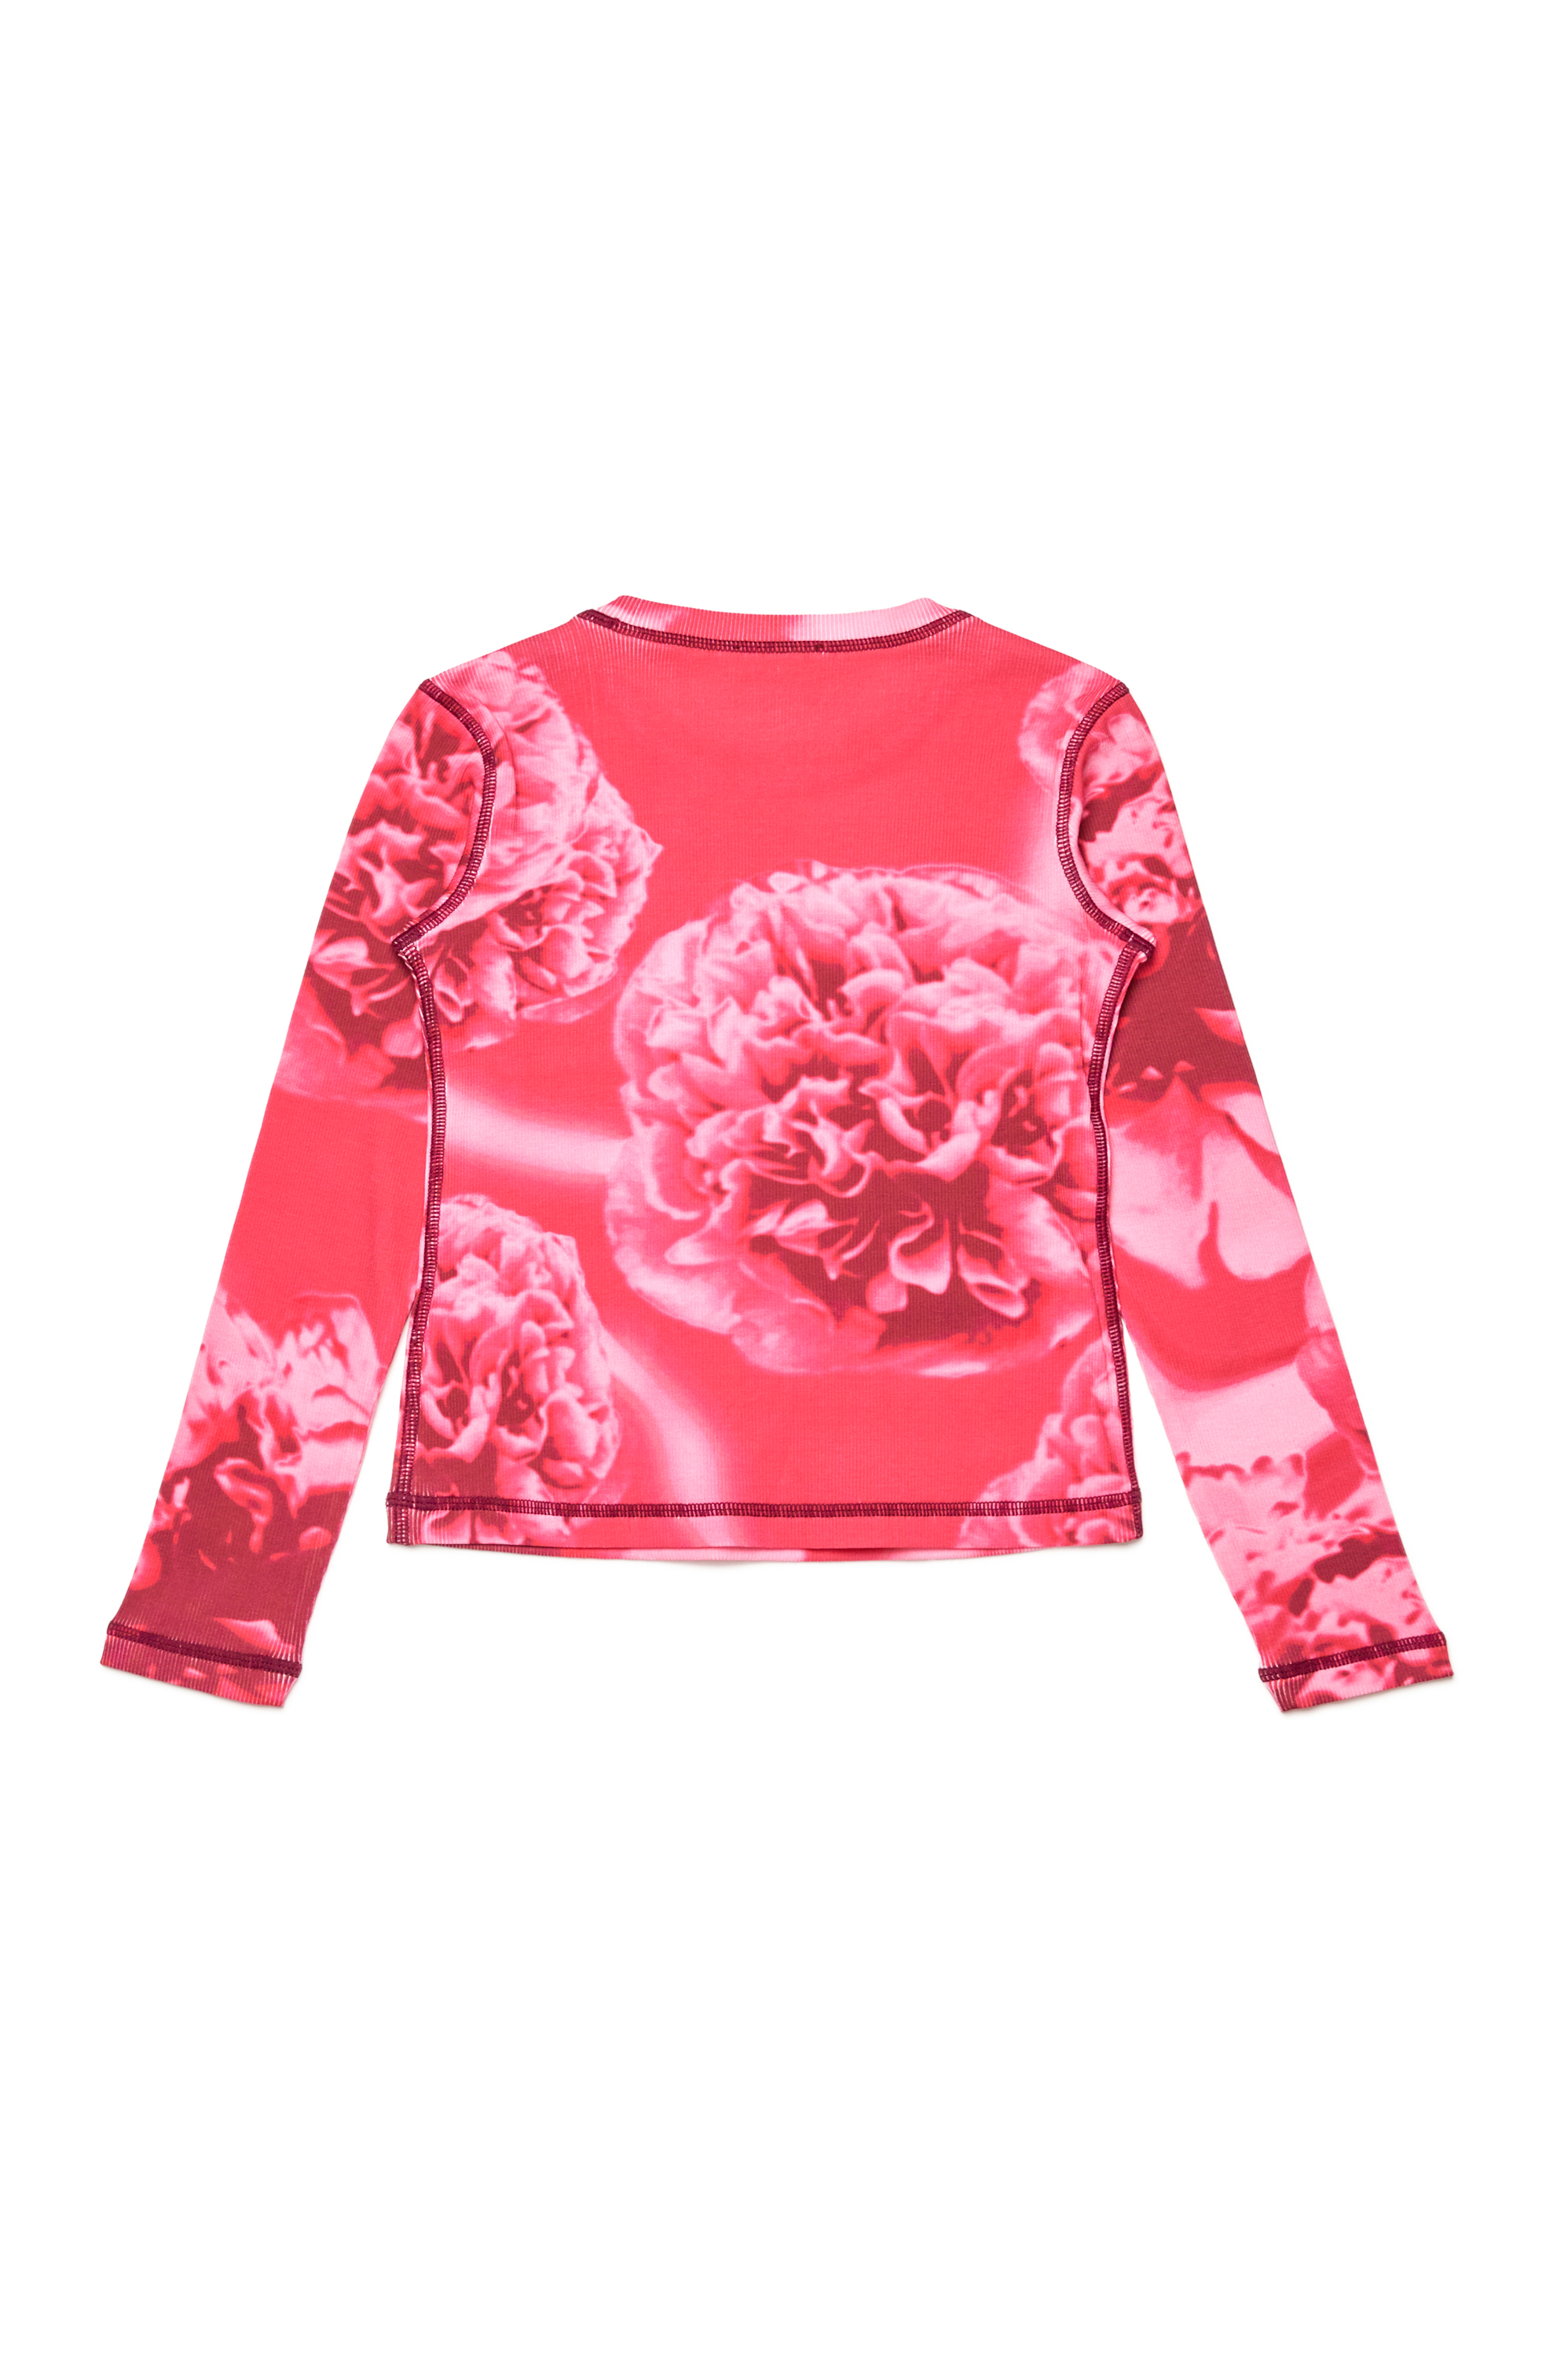 Diesel - TCLAUDY, Damen Geripptes Top mit floralem Print in Rosa - Image 2